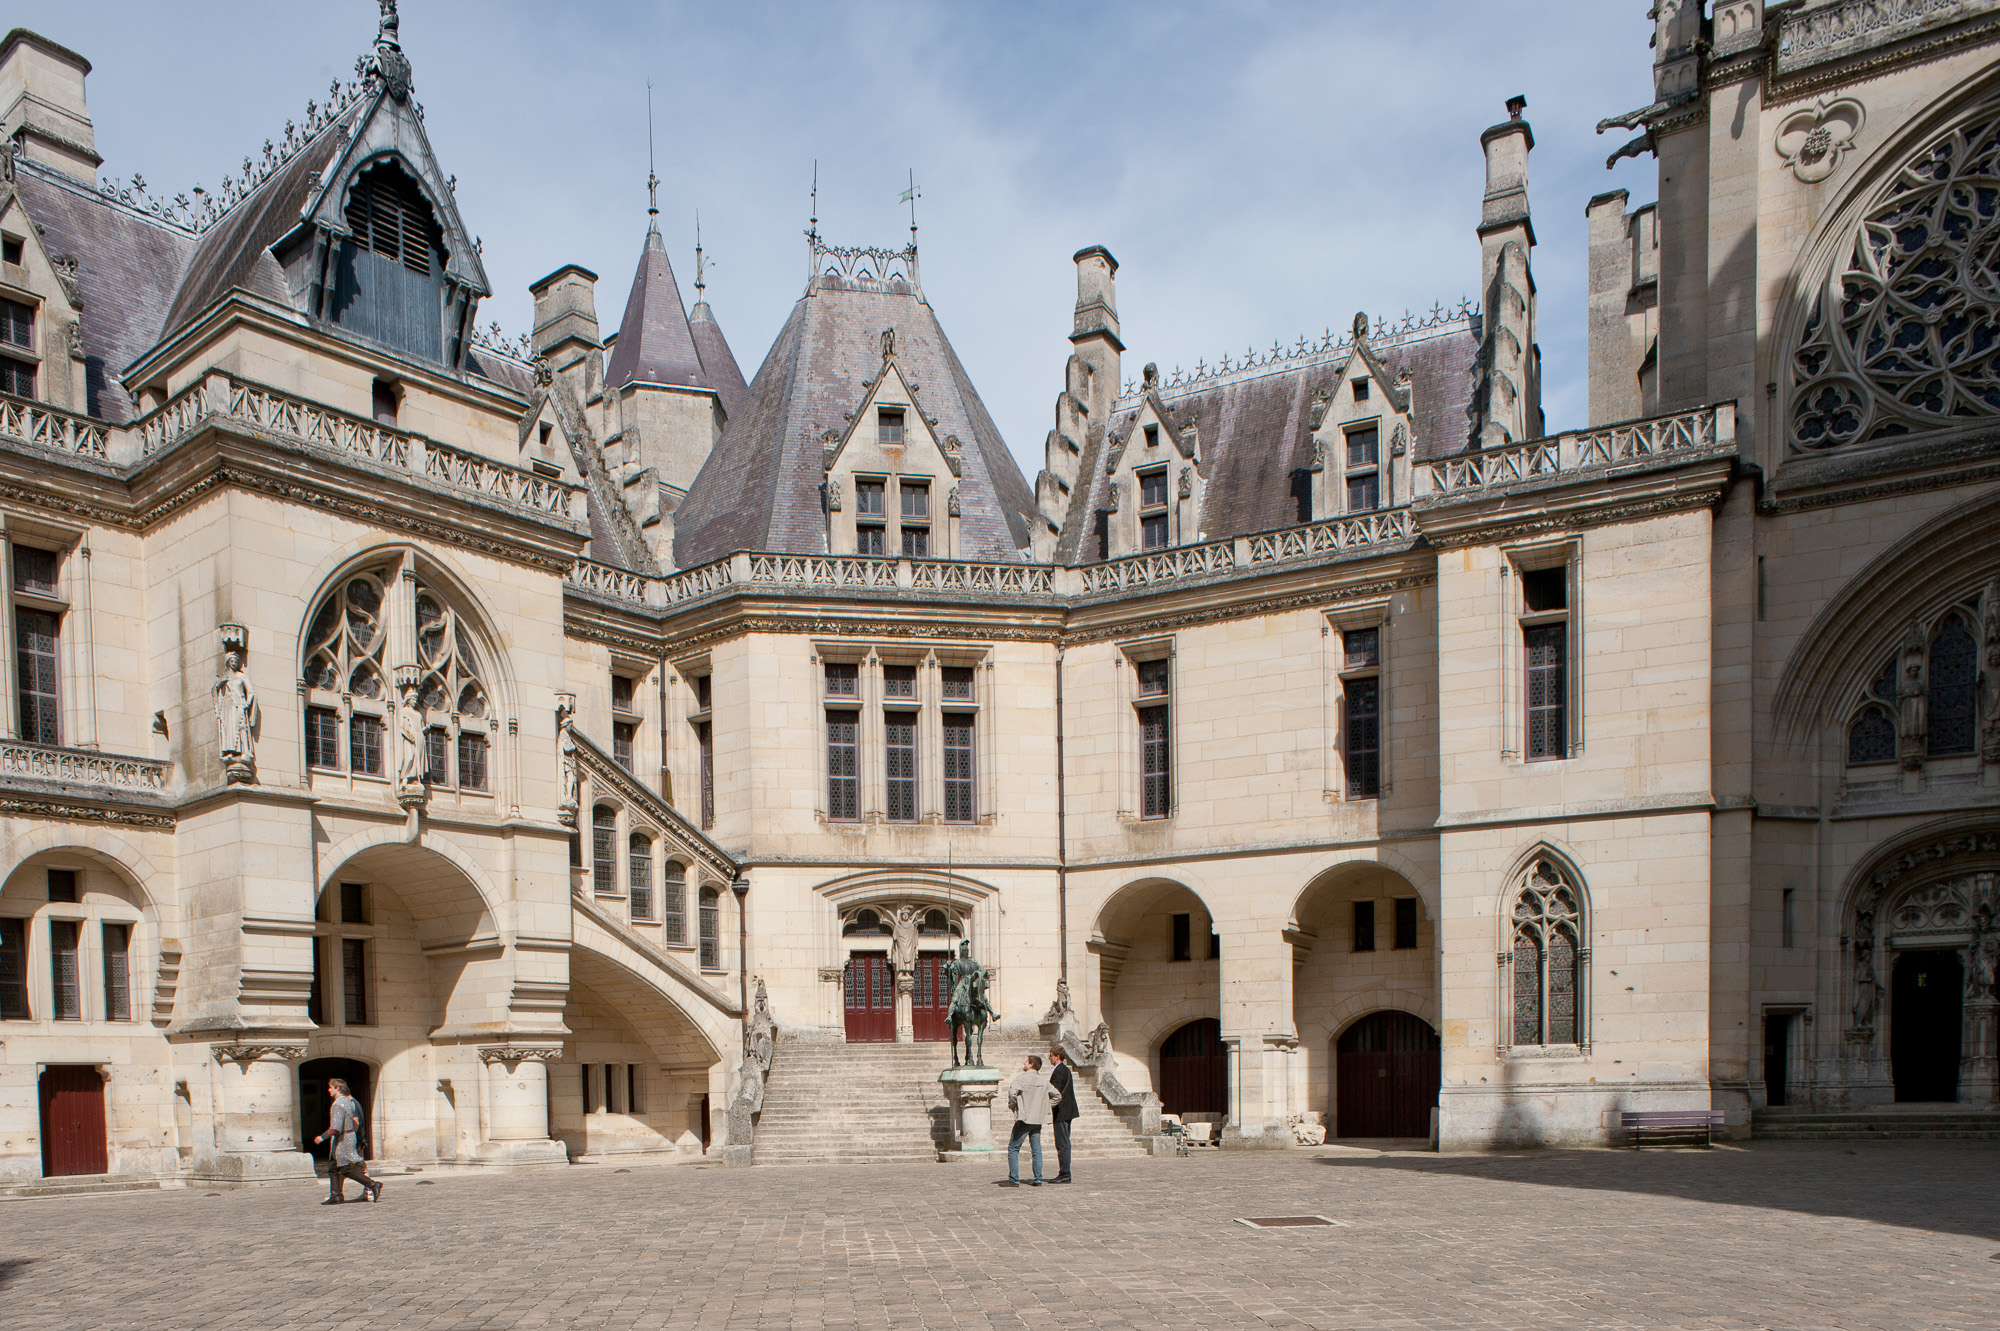 Le Château, construit au XIV ème siècle, sous Louis d'Orléans, a été remanié par Viollet-le-Duc en 1850. L'ornementation des façades, s'apparente à des décors de théâtre, avec ses sculptures d'animaux fantastiques., a été remanié par Viollet-le-Duc en 1850. L'édifice se reflète dans les eaux du lac., a été remanié par Viollet-le-Duc en 1850., a été remanié par Viollet-le-Duc en 1850. La grande cour intérieure et sa galerie ouverte ornée de voûtes à caissons et de chapiteaux historiés au style plutôt Renaissance.